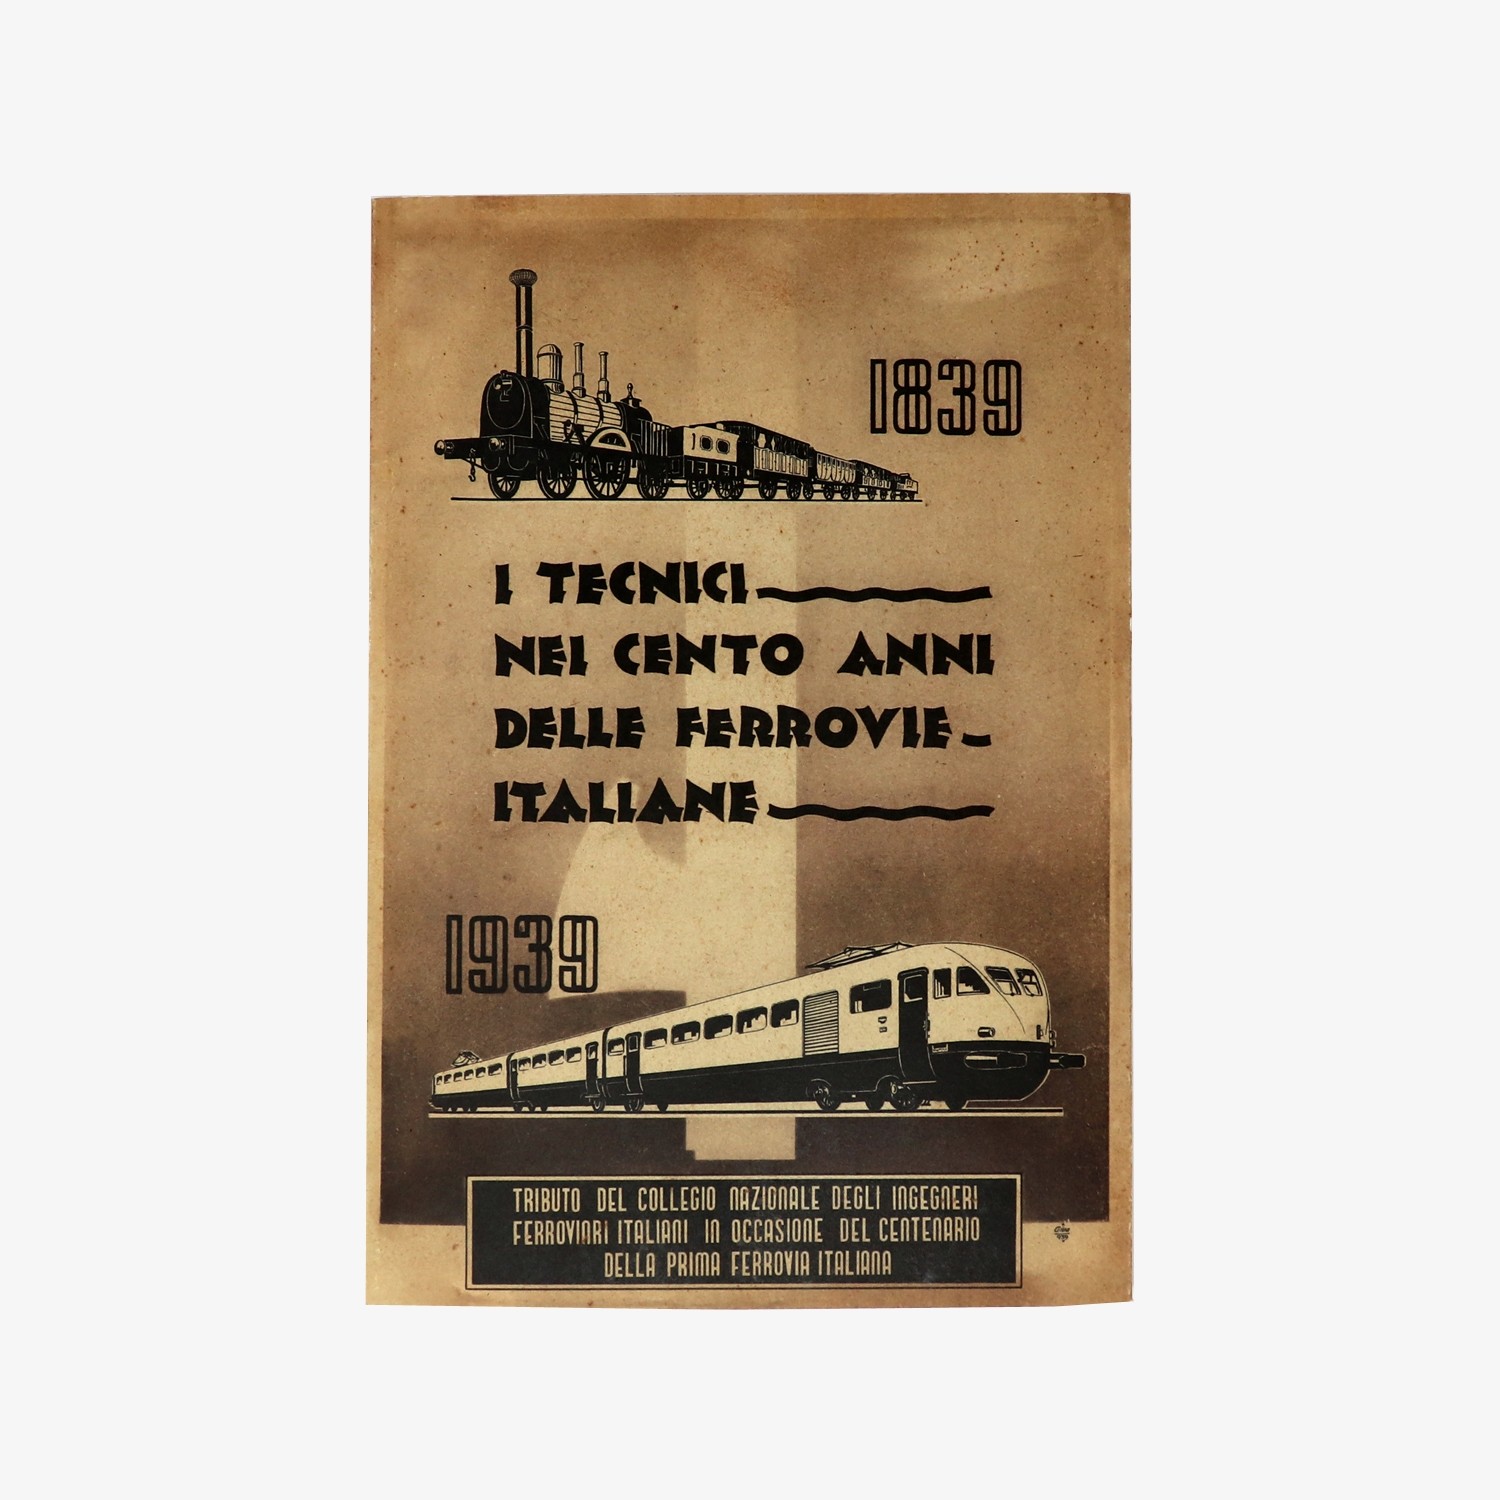 I tecnici nei cento anni delle Ferrovie Italiane